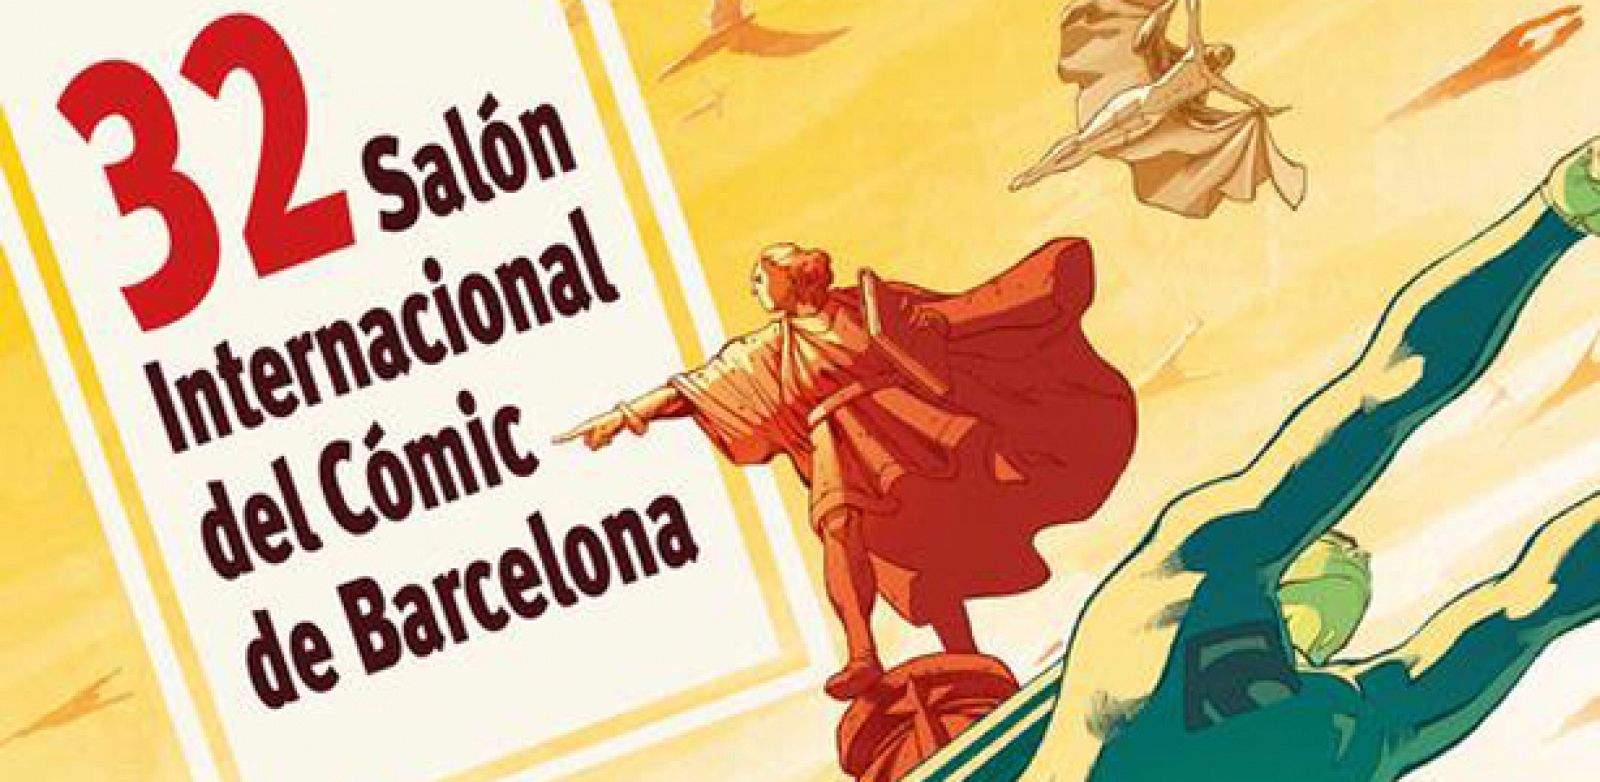 Fragmento del cartel de la 32 edición del Salón del cómic de Barcelona, obra de Carlos Pacheco